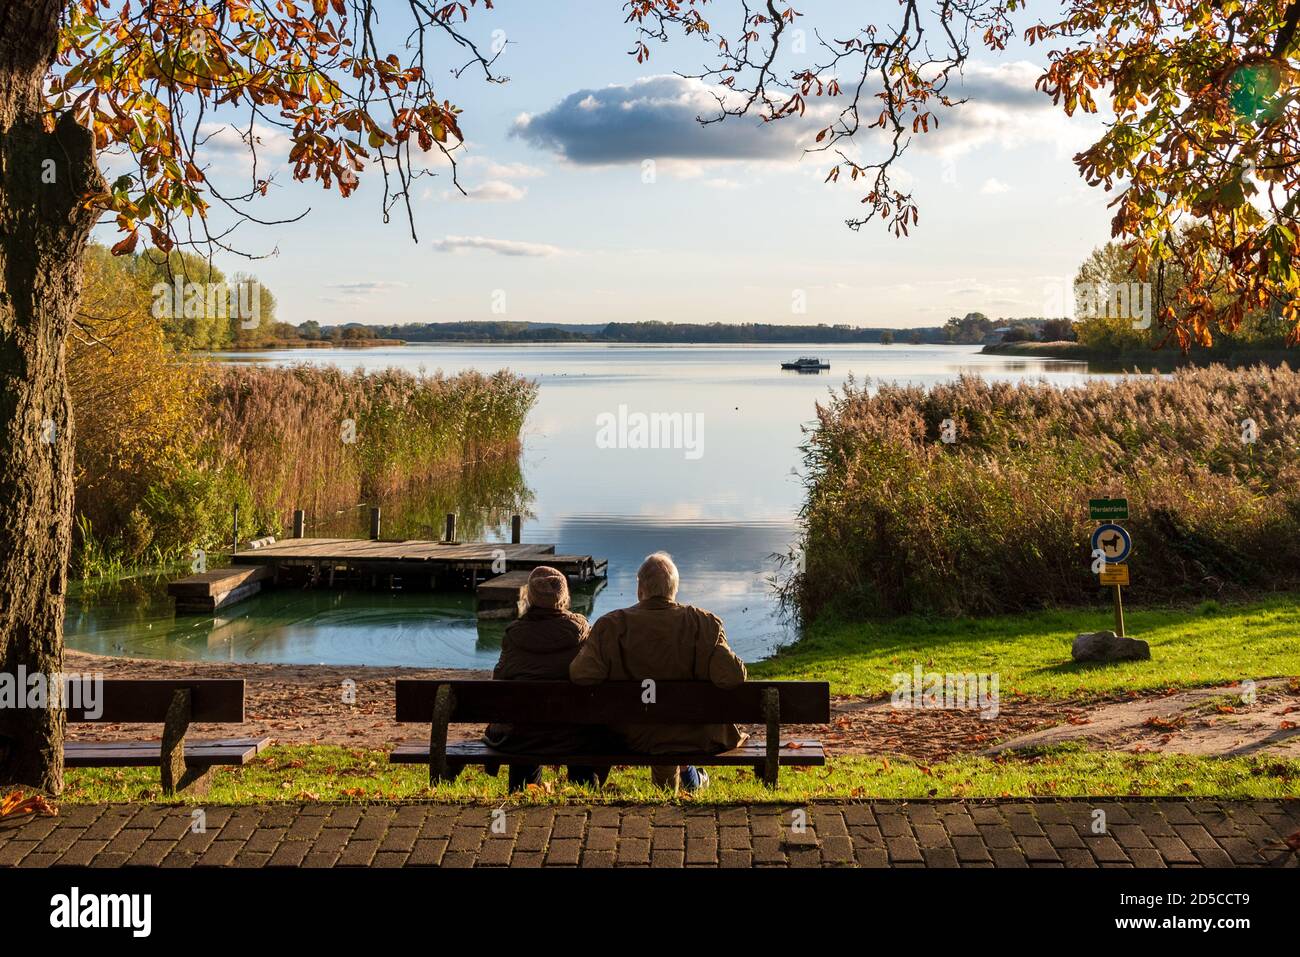 Herbstliche Stimmung am Passader See in Schleswig-Holstein, ein altes Ehepaar genißt die Herbstsonne Foto Stock